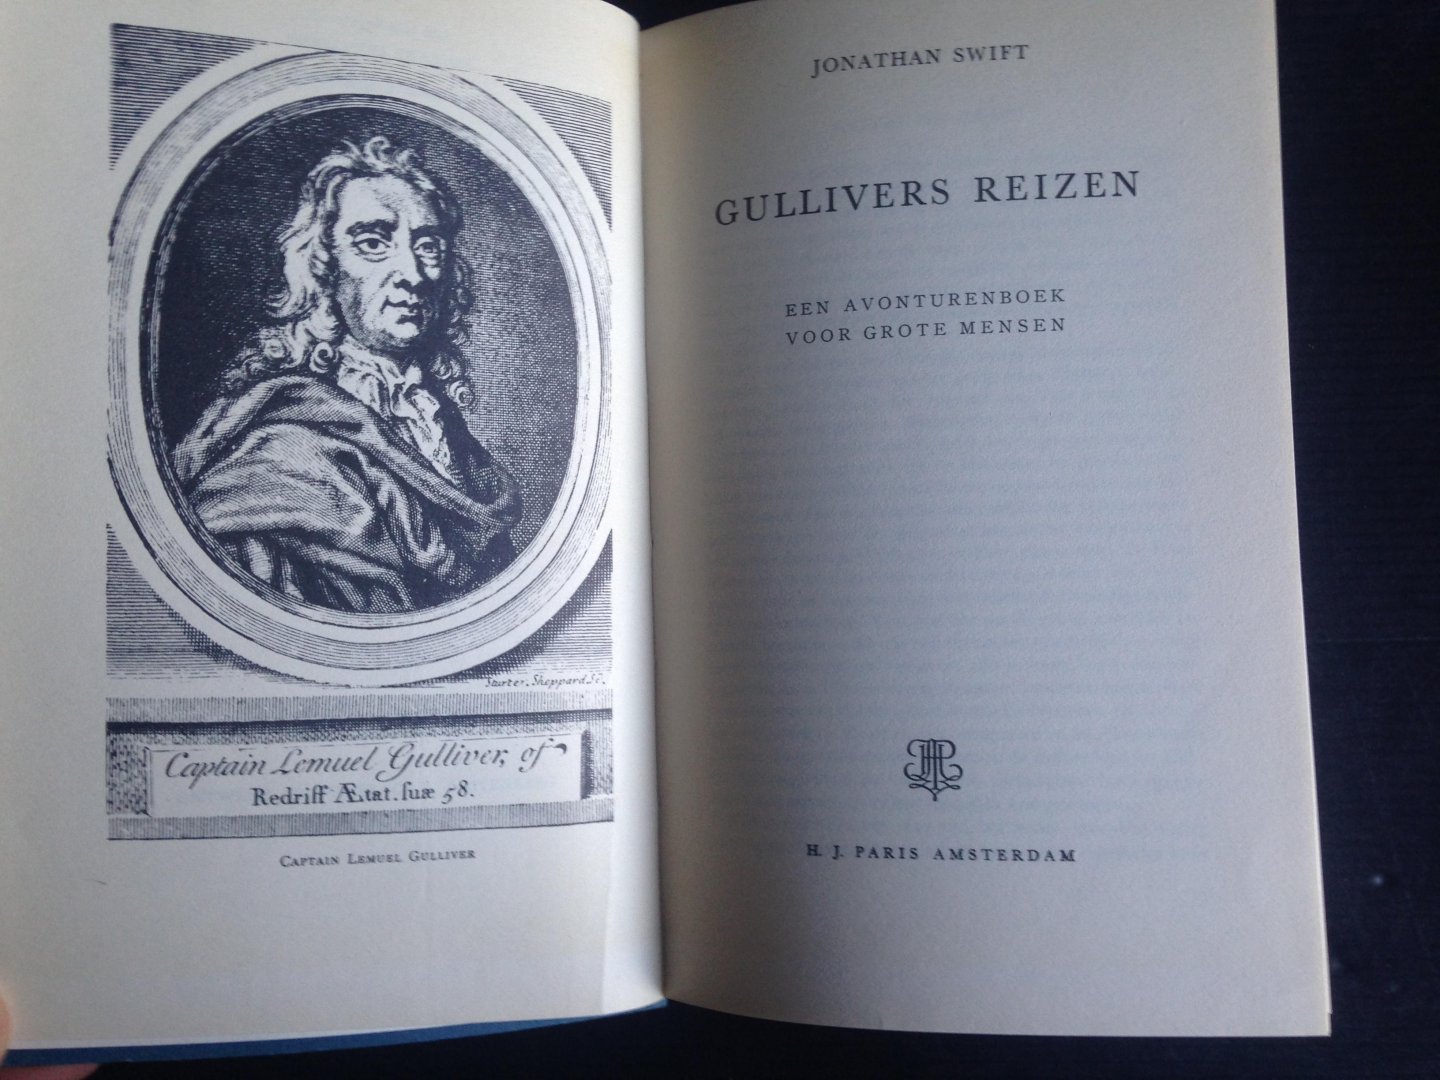 Swift, Jonathan - Gullivers Reizen, Een avonturenboek voor grote mensen